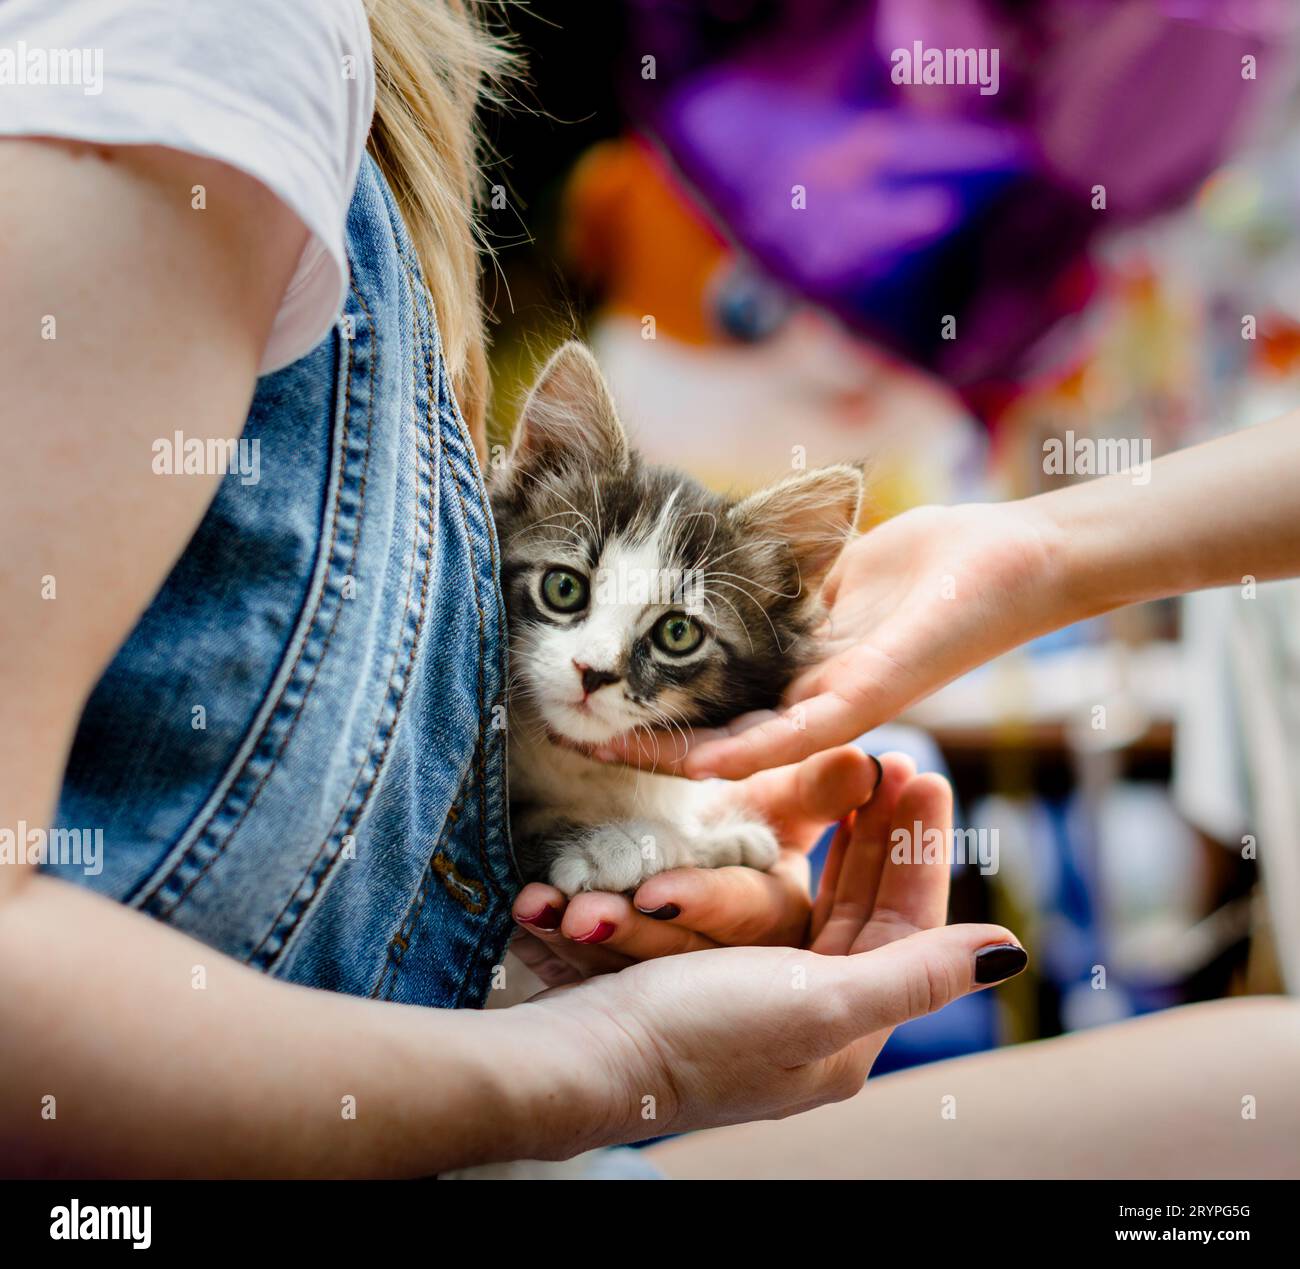 El cuidado de las mascotas de la mano del niño acaricia un pequeño gatito tabby sentado Foto de stock